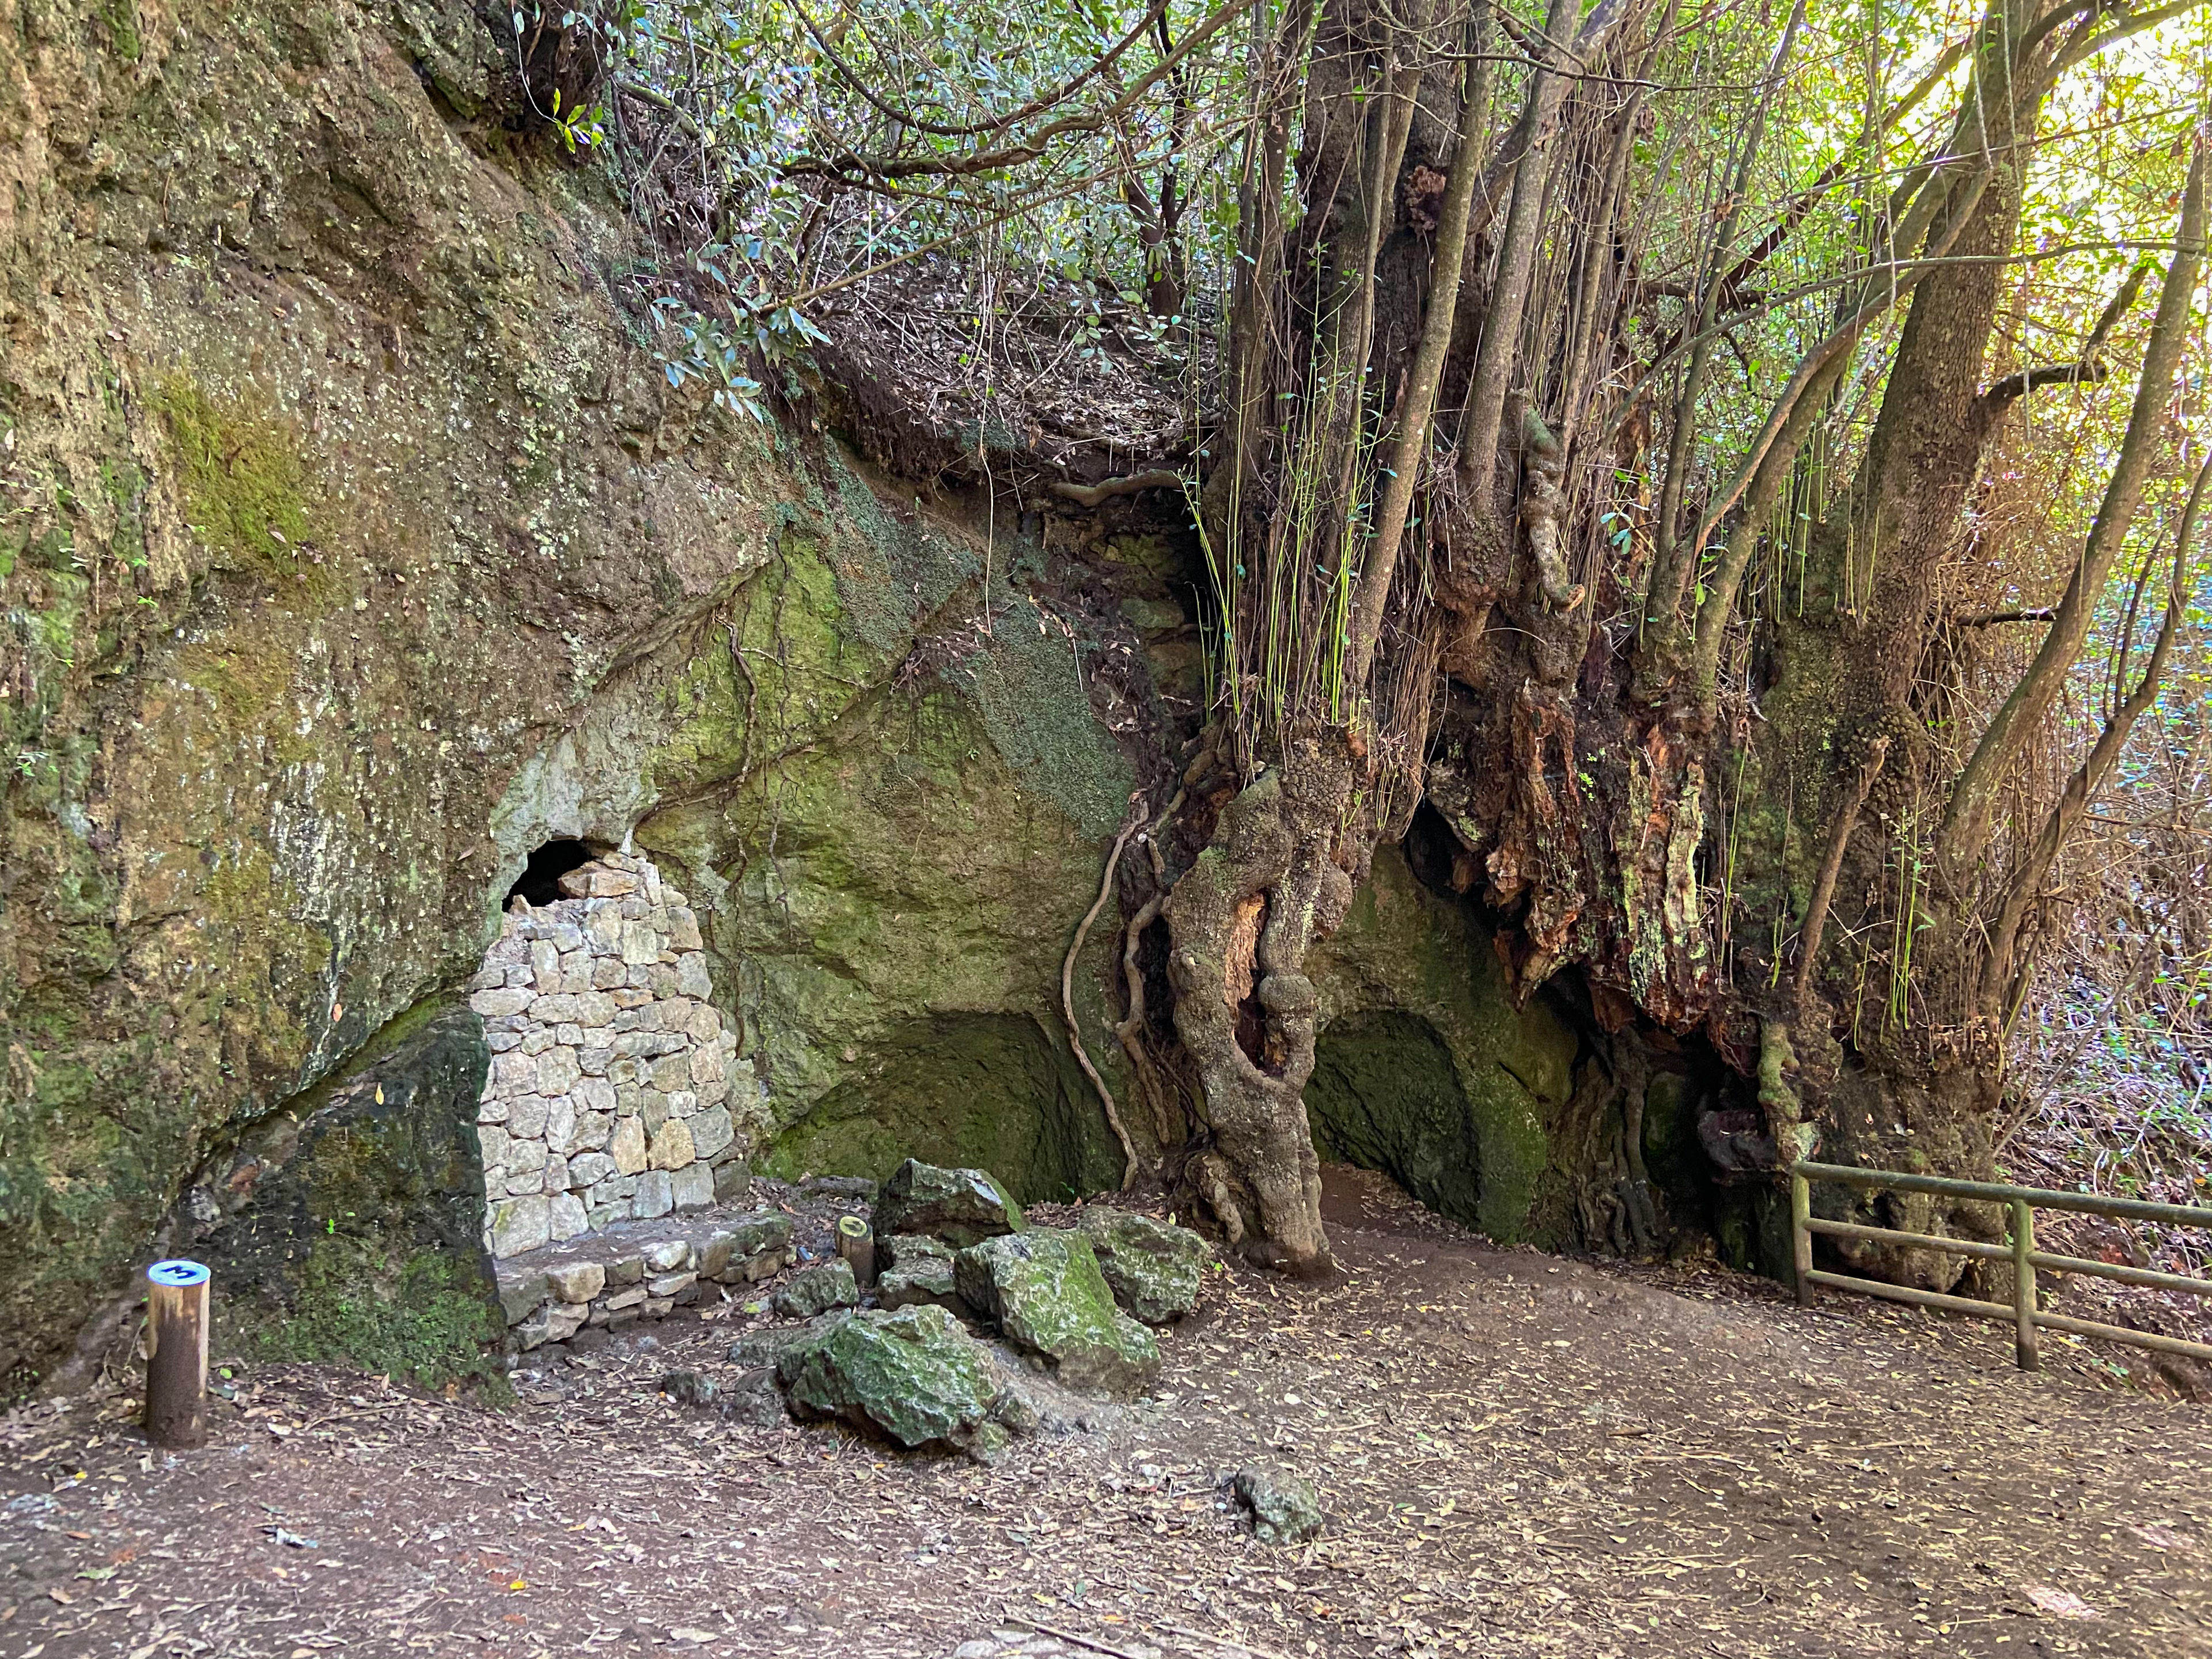 angelegter Wanderweg und zugemauerte Höhle auf der Wanderung Lomo de Jara